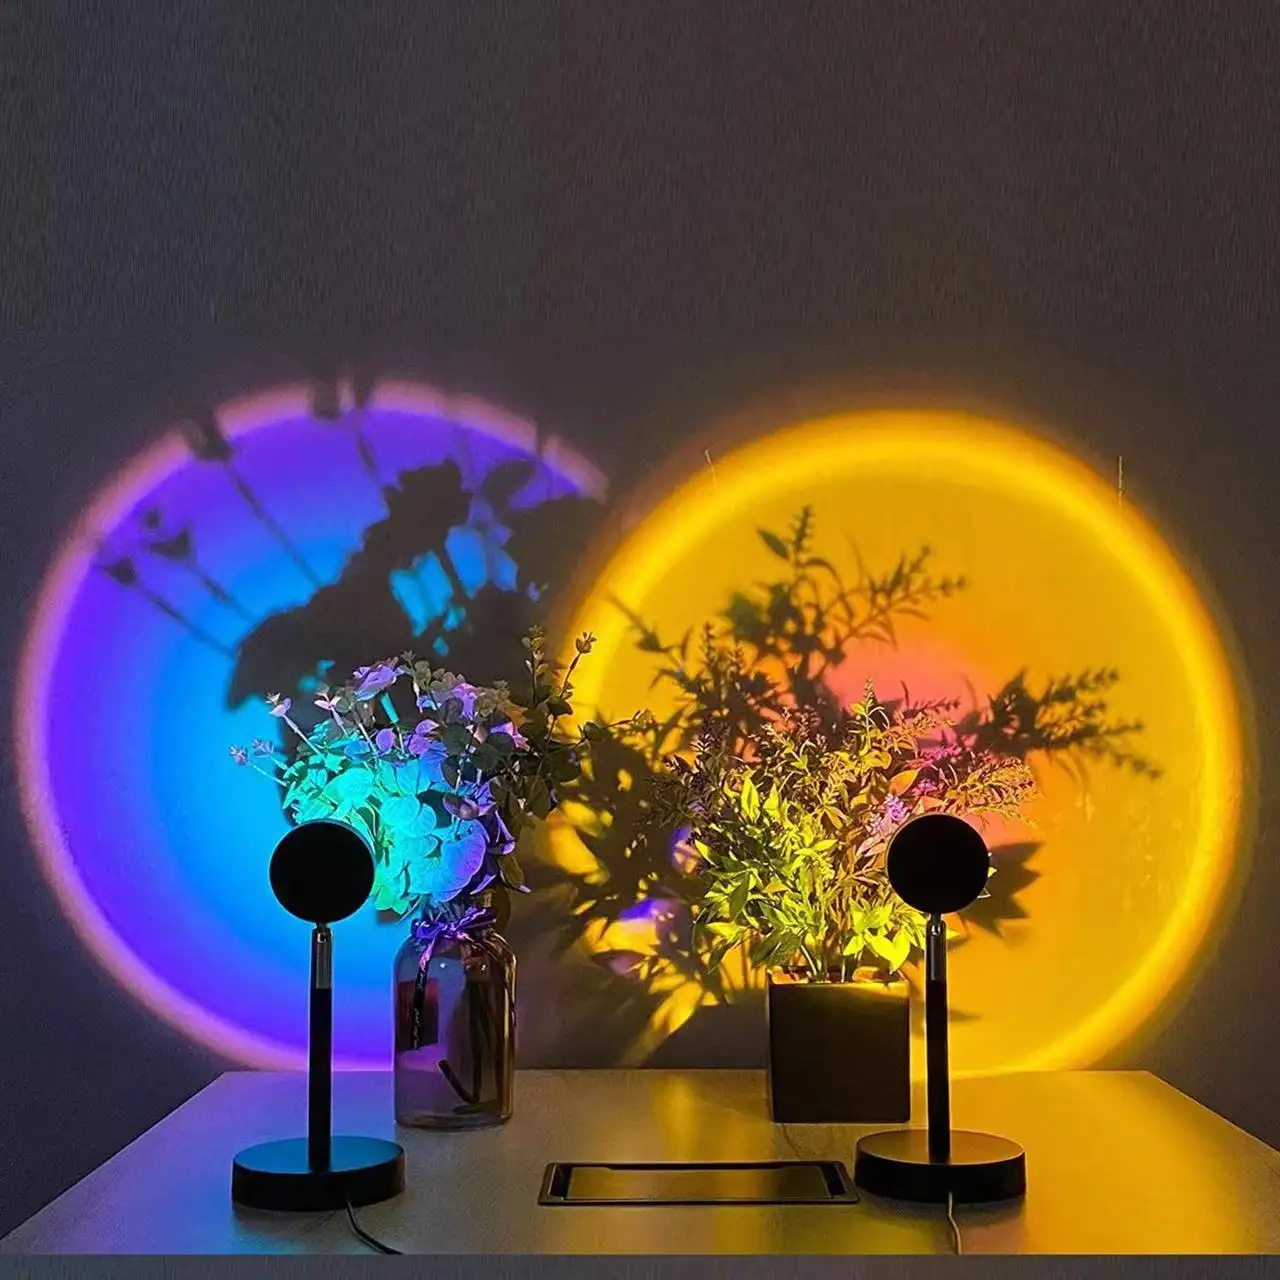 مصنع الجملة 360 قابل للتعديل 16 ألوان جو مصباح البسيطة الغروب ضوء المصباح مع ملون للتحكم عن بعد الغروب العارض مصباح